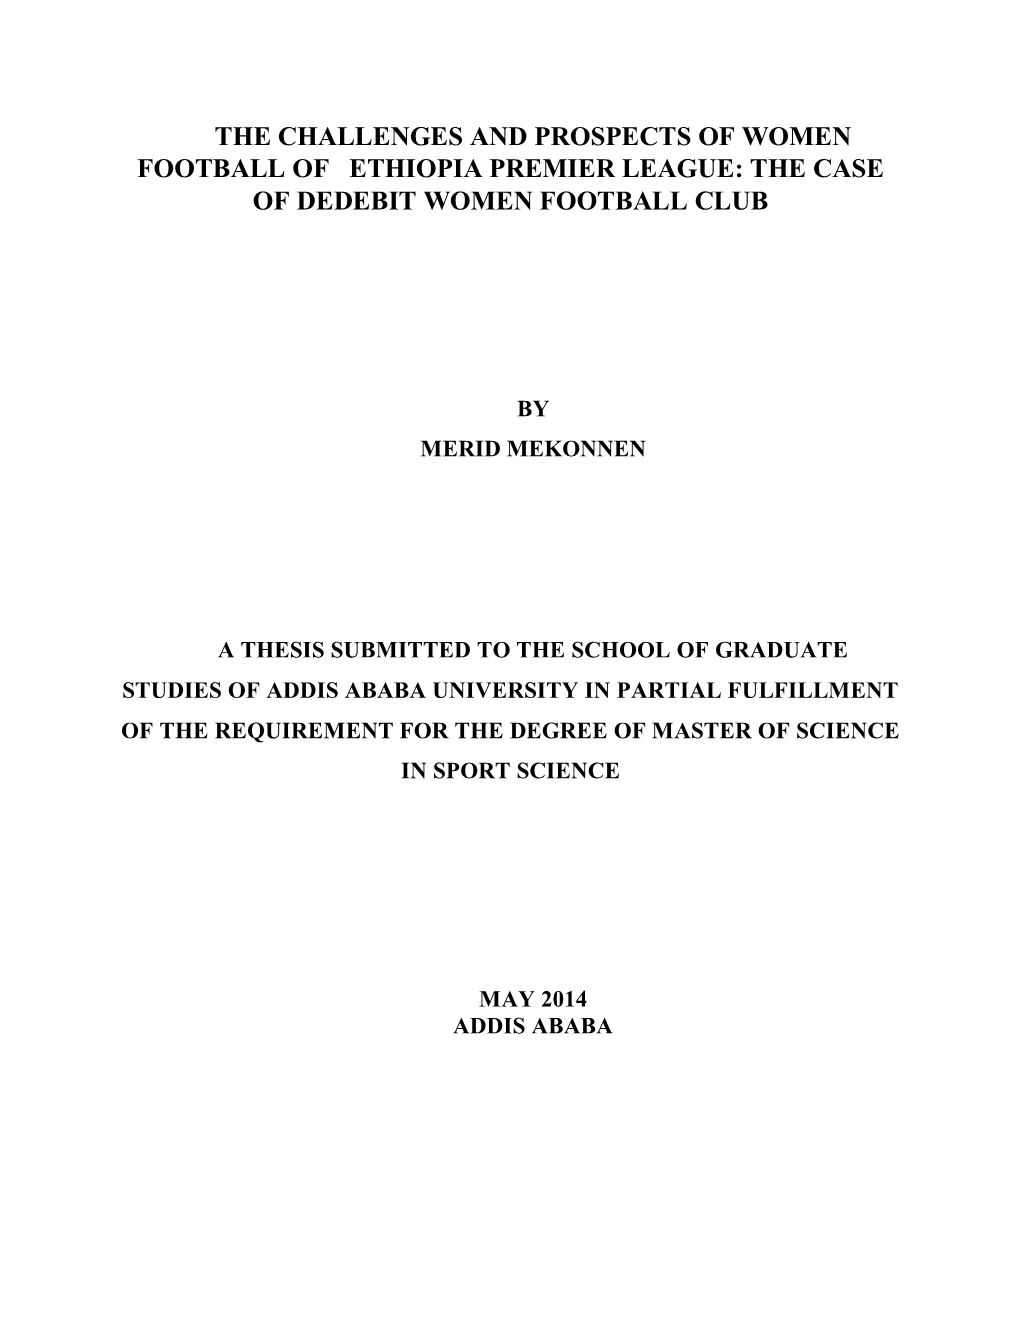 The Case of Dedebit Women Football Club